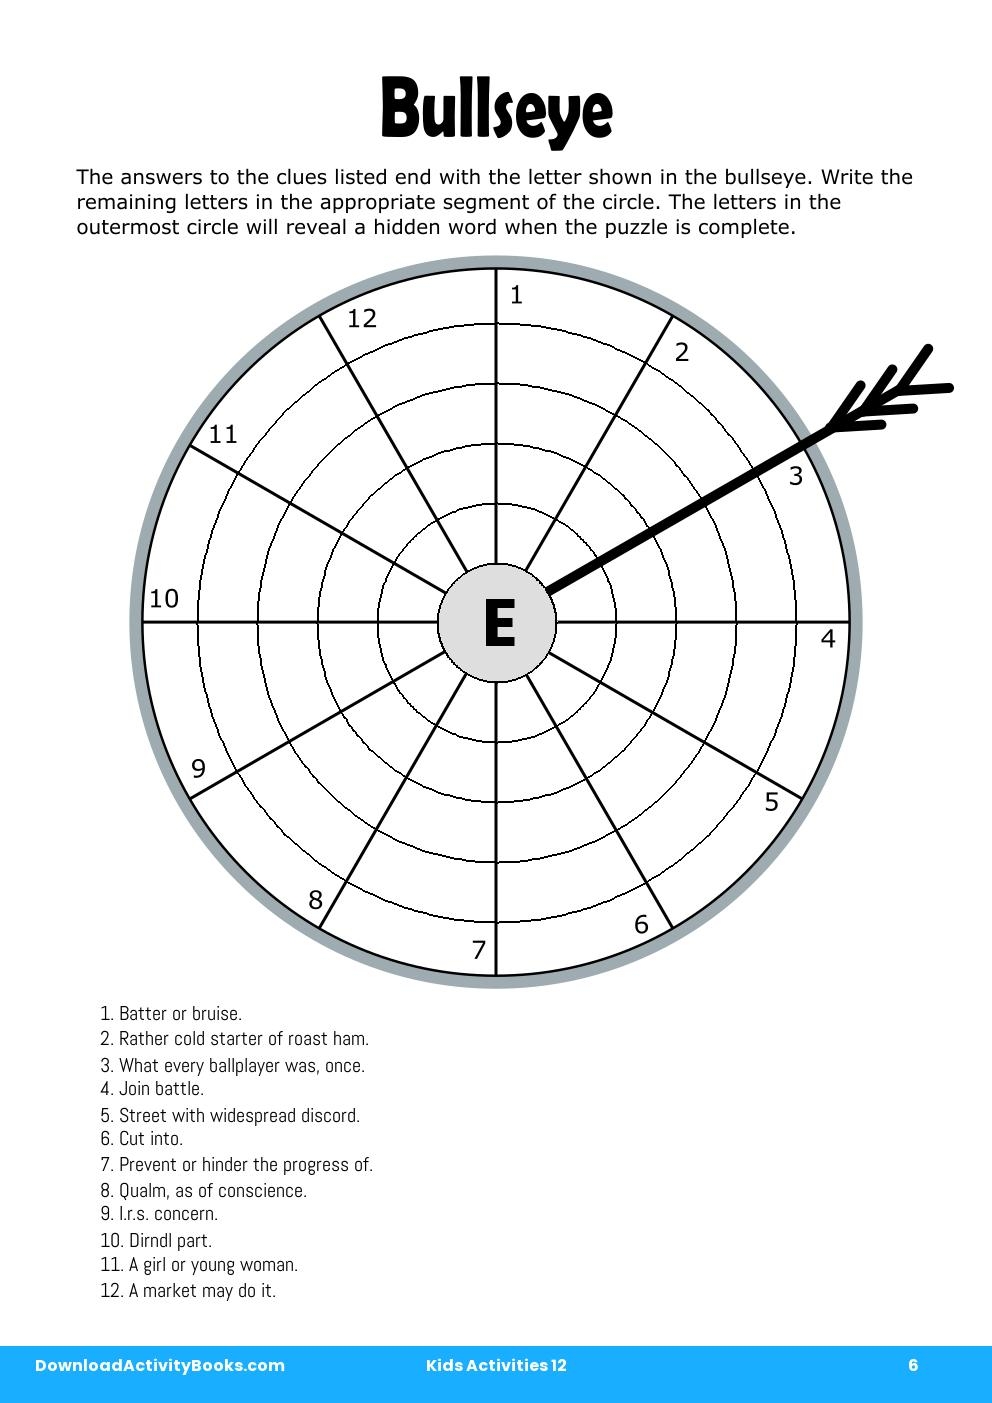 Bullseye in Kids Activities 12